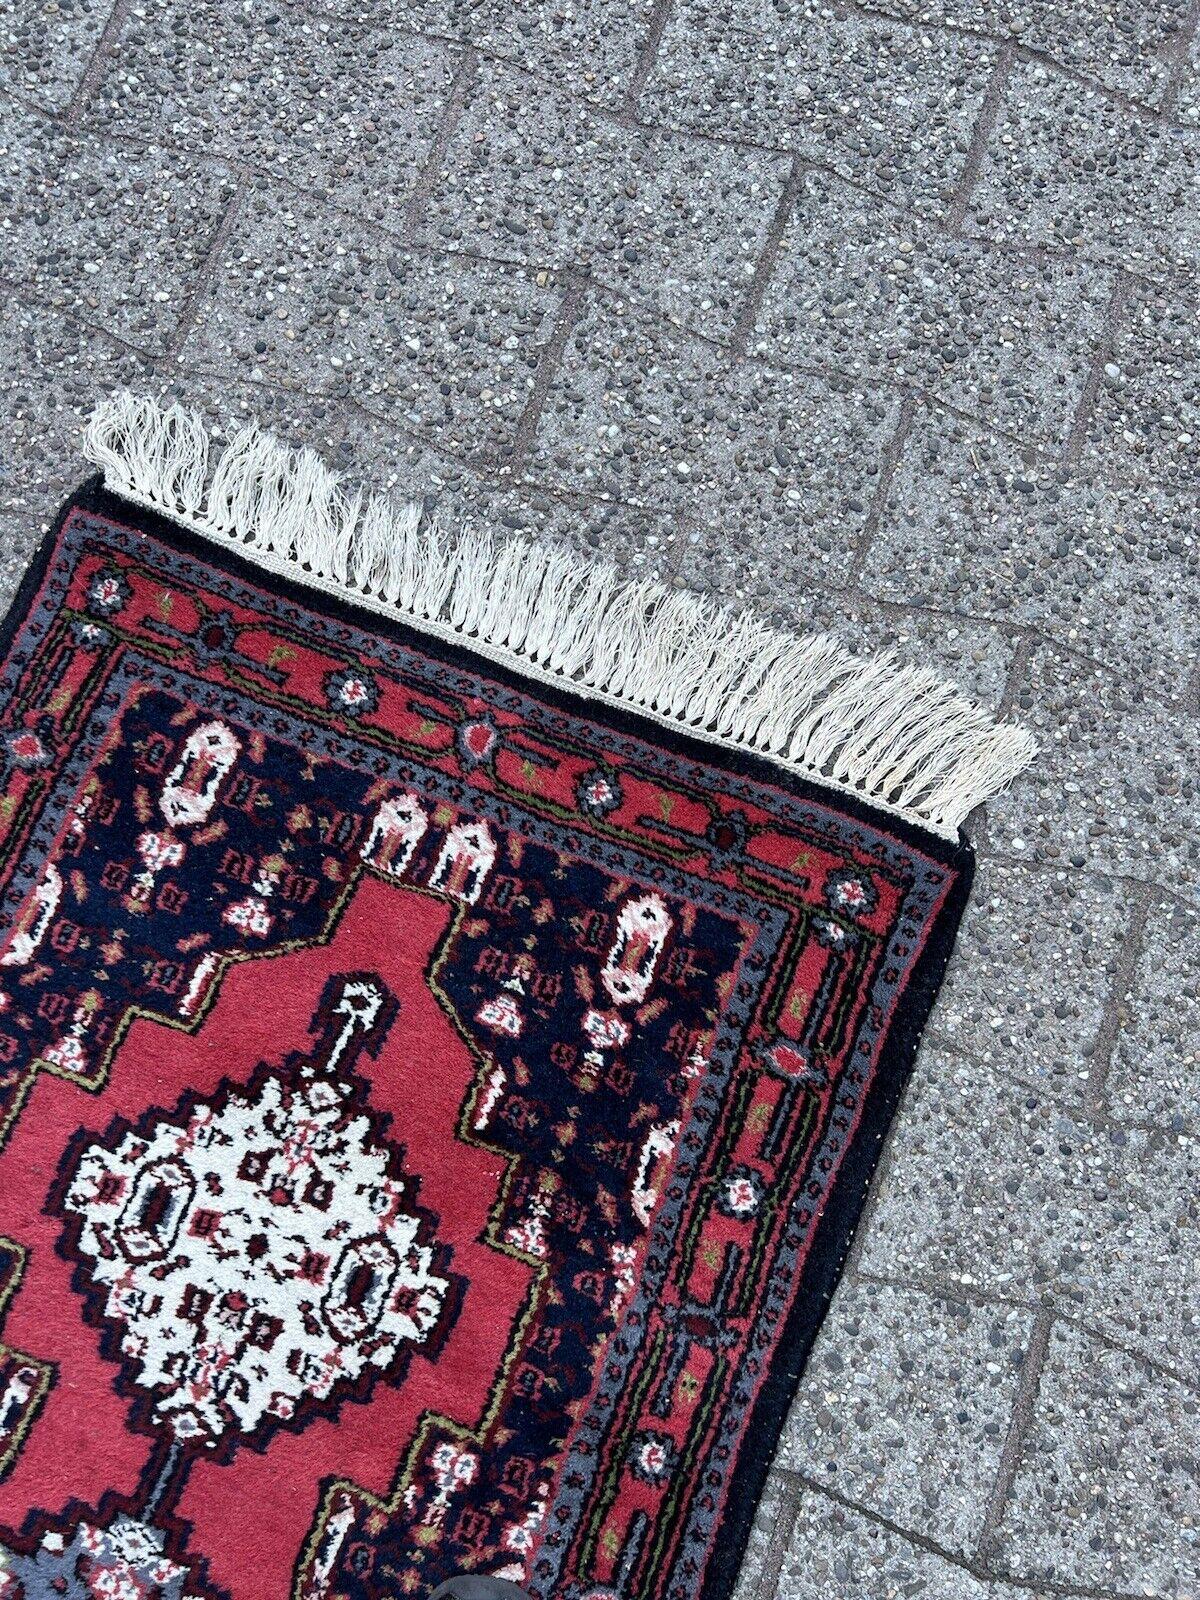  Holen Sie sich mit diesem handgefertigten Hamadan-Teppich im persischen Vintage-Stil ein Stück persisches Erbe in Ihr Zuhause. Dieser in den 1970er Jahren gefertigte Teppich misst 2,1' x 4,4' (66cm x 137cm) und ist ein schönes Beispiel für die